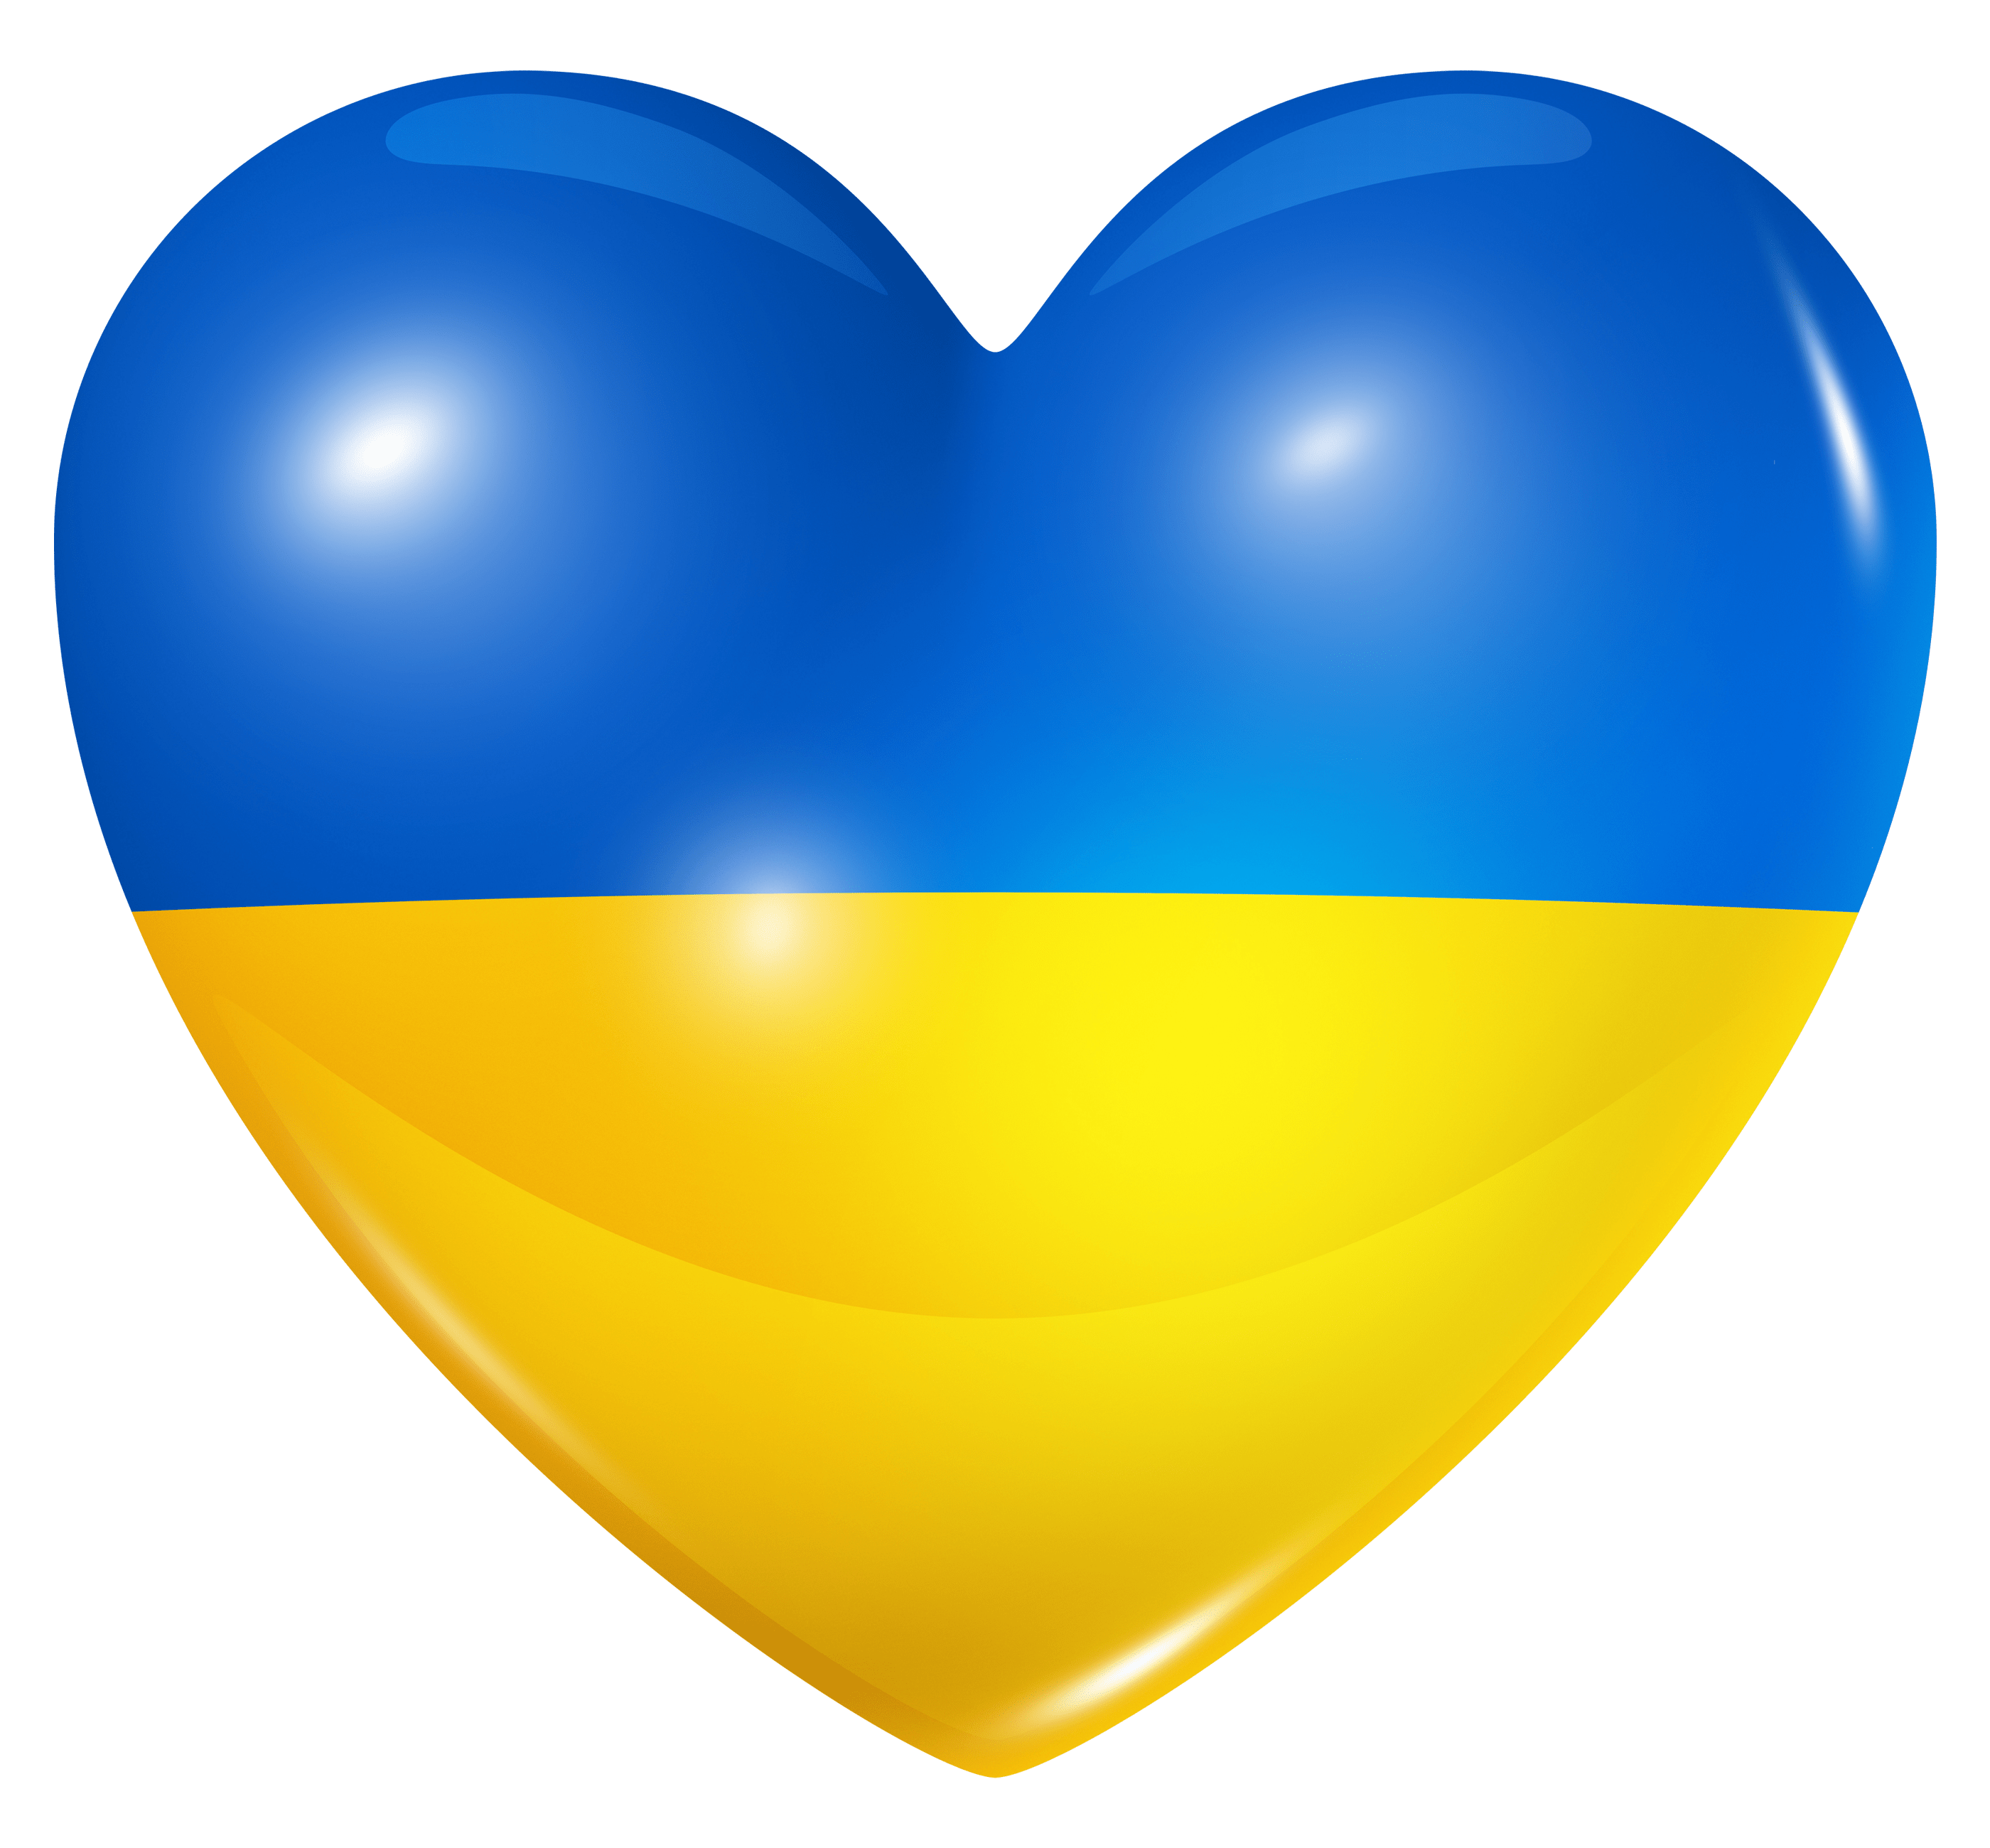 ukraine-flag-in-heart-shape-on-transparent-background-png-min.png